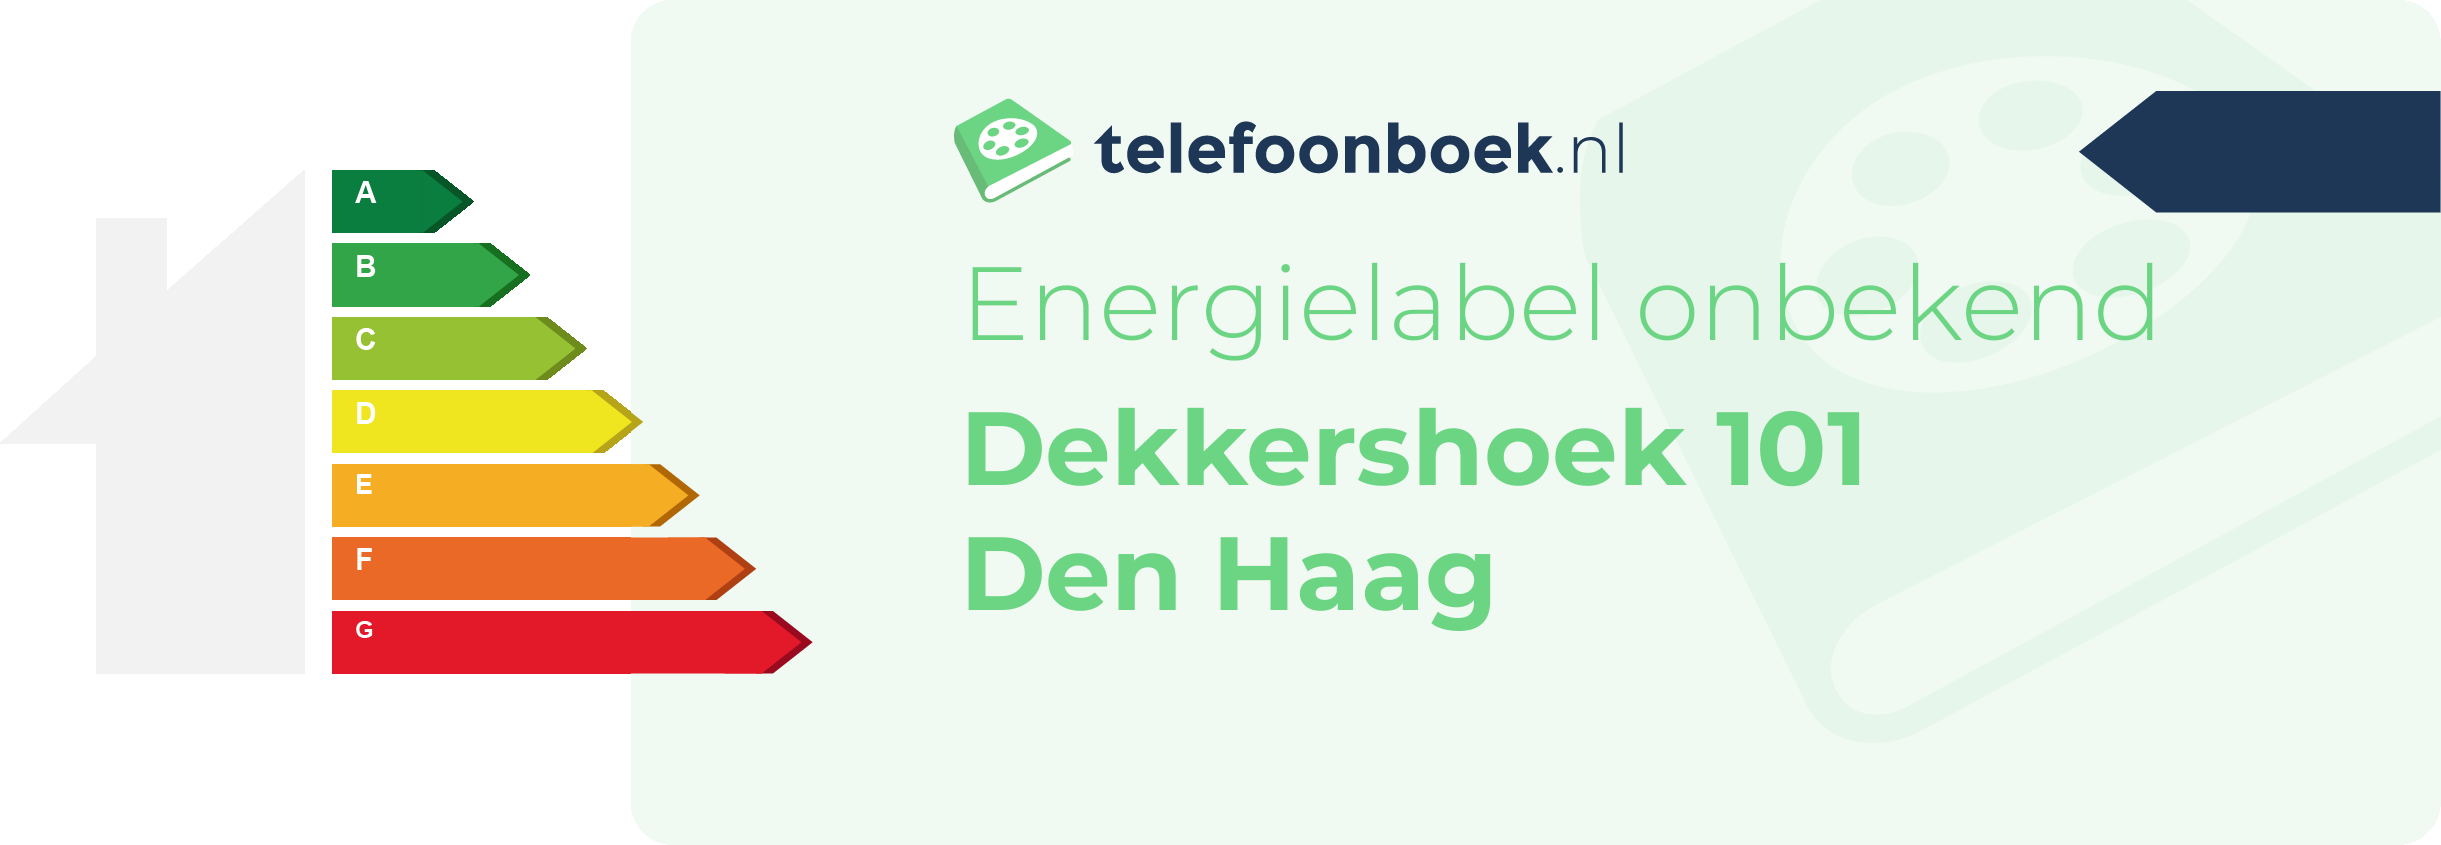 Energielabel Dekkershoek 101 Den Haag